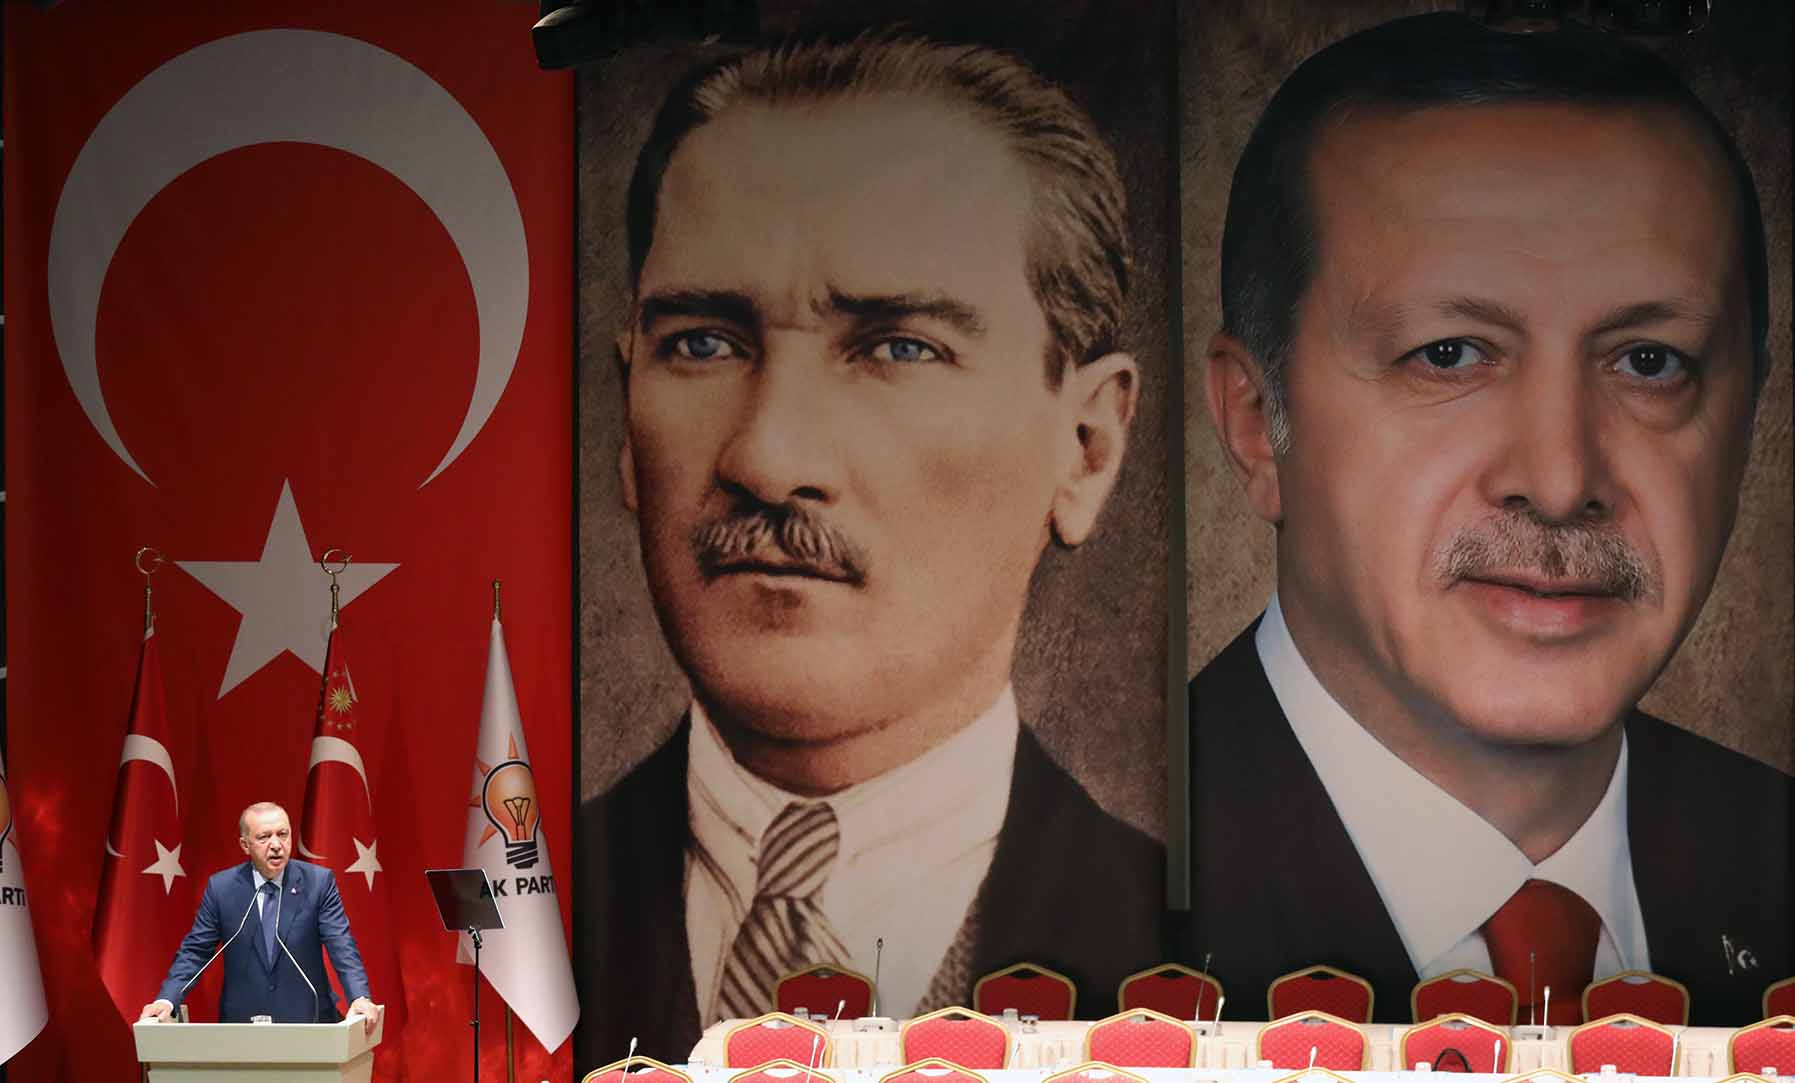 politica-exterior-turca